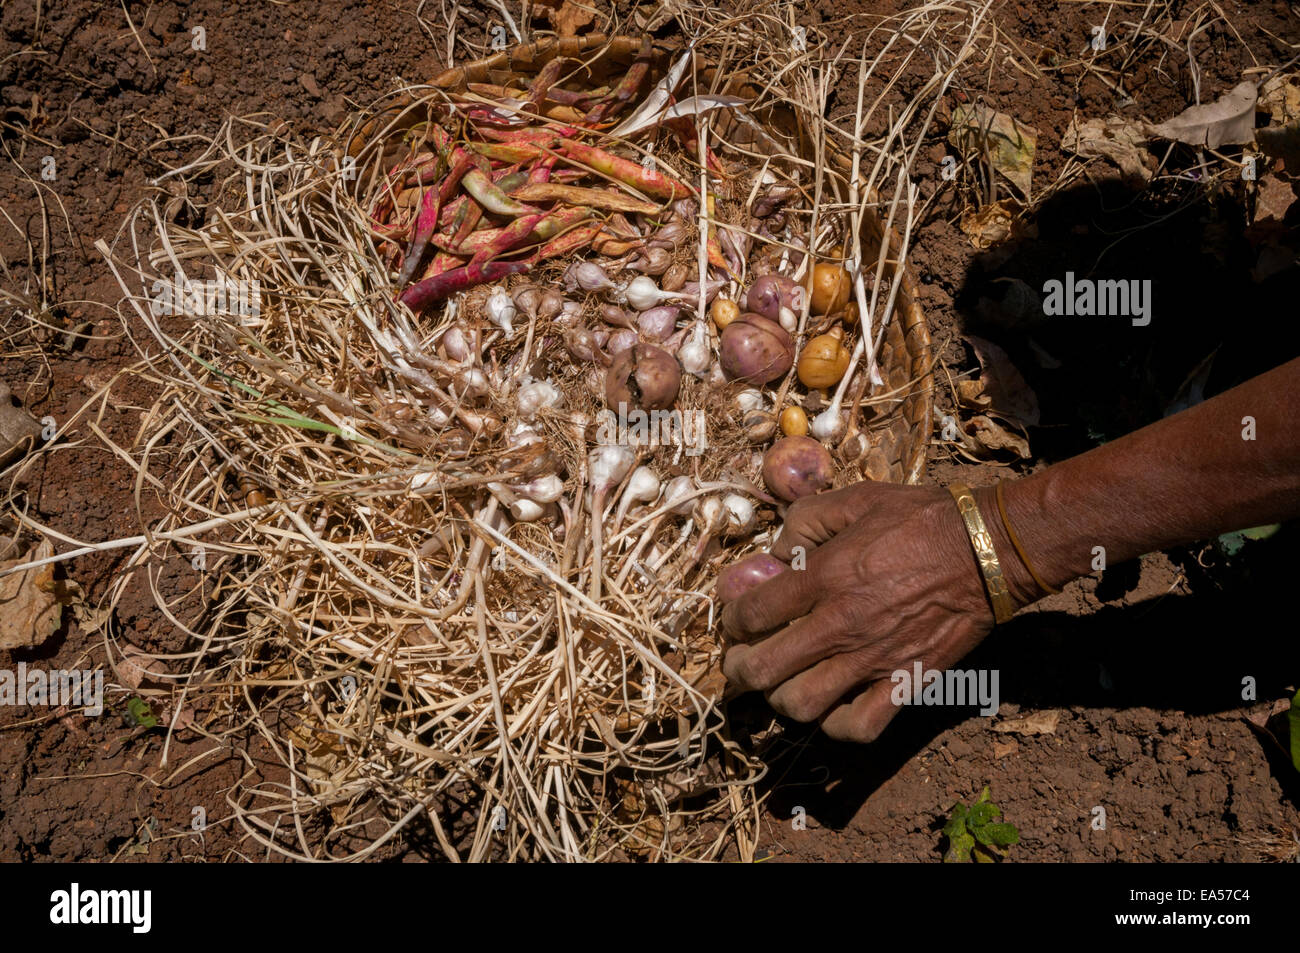 Yuliana Fuka récolte diverses cultures sur ses terres agricoles pendant la saison sèche dans le village de Fatumnasi, au Timor central du Sud, à Nusa Tenggara de l'est, en Indonésie. Banque D'Images